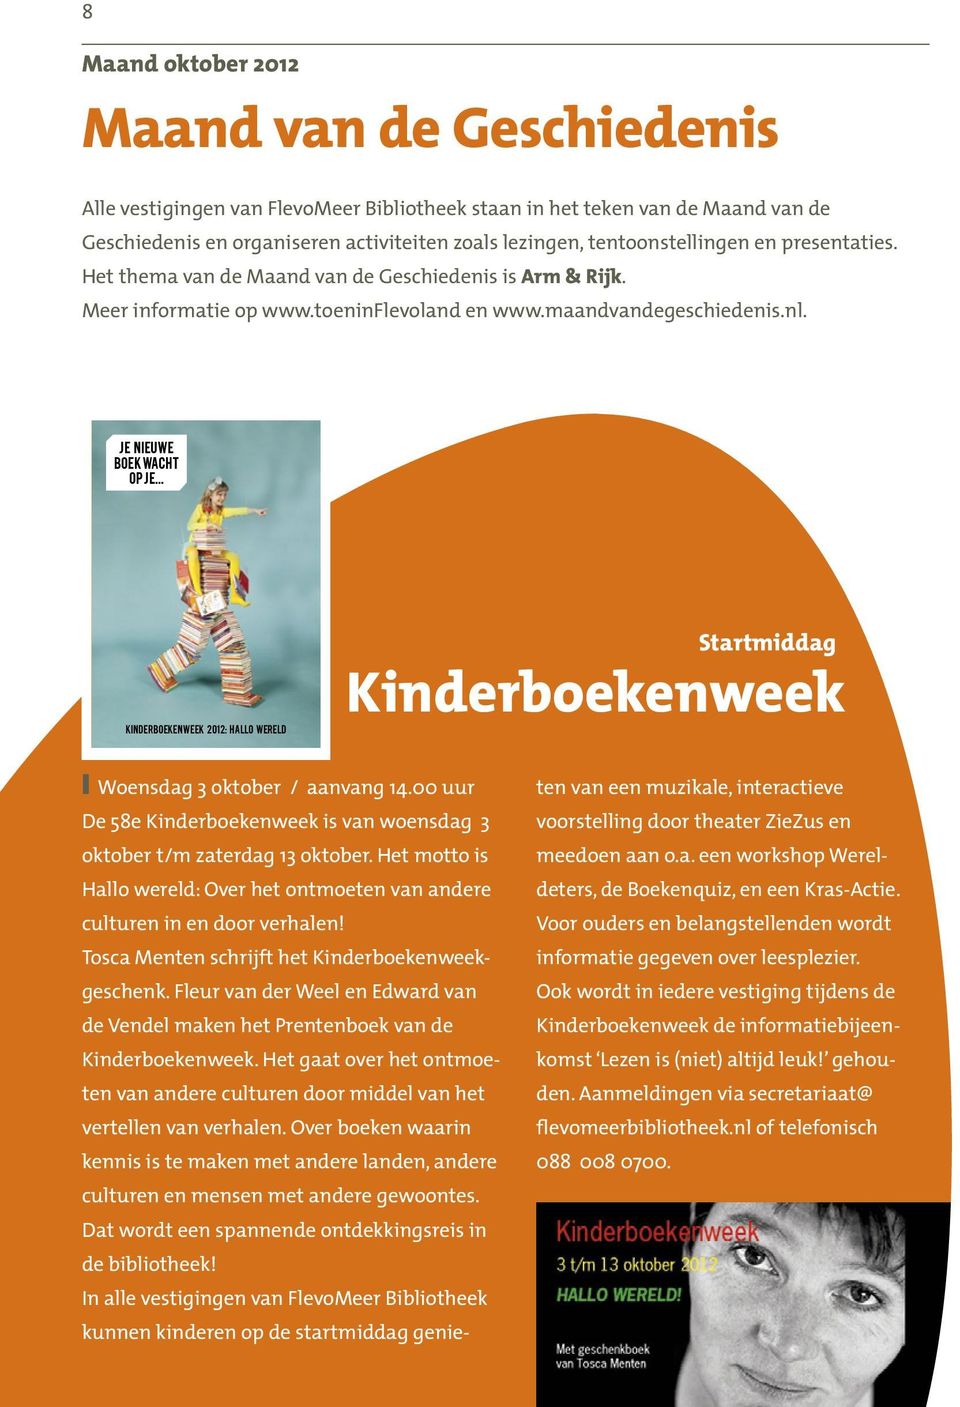 .. kinderboekenweek 2012: HALLO WERELD Startmiddag Kinderboekenweek! Woensdag 3 oktober / aanvang 14.00 uur De 58e Kinderboekenweek is van woensdag 3 oktober t/m zaterdag 13 oktober.